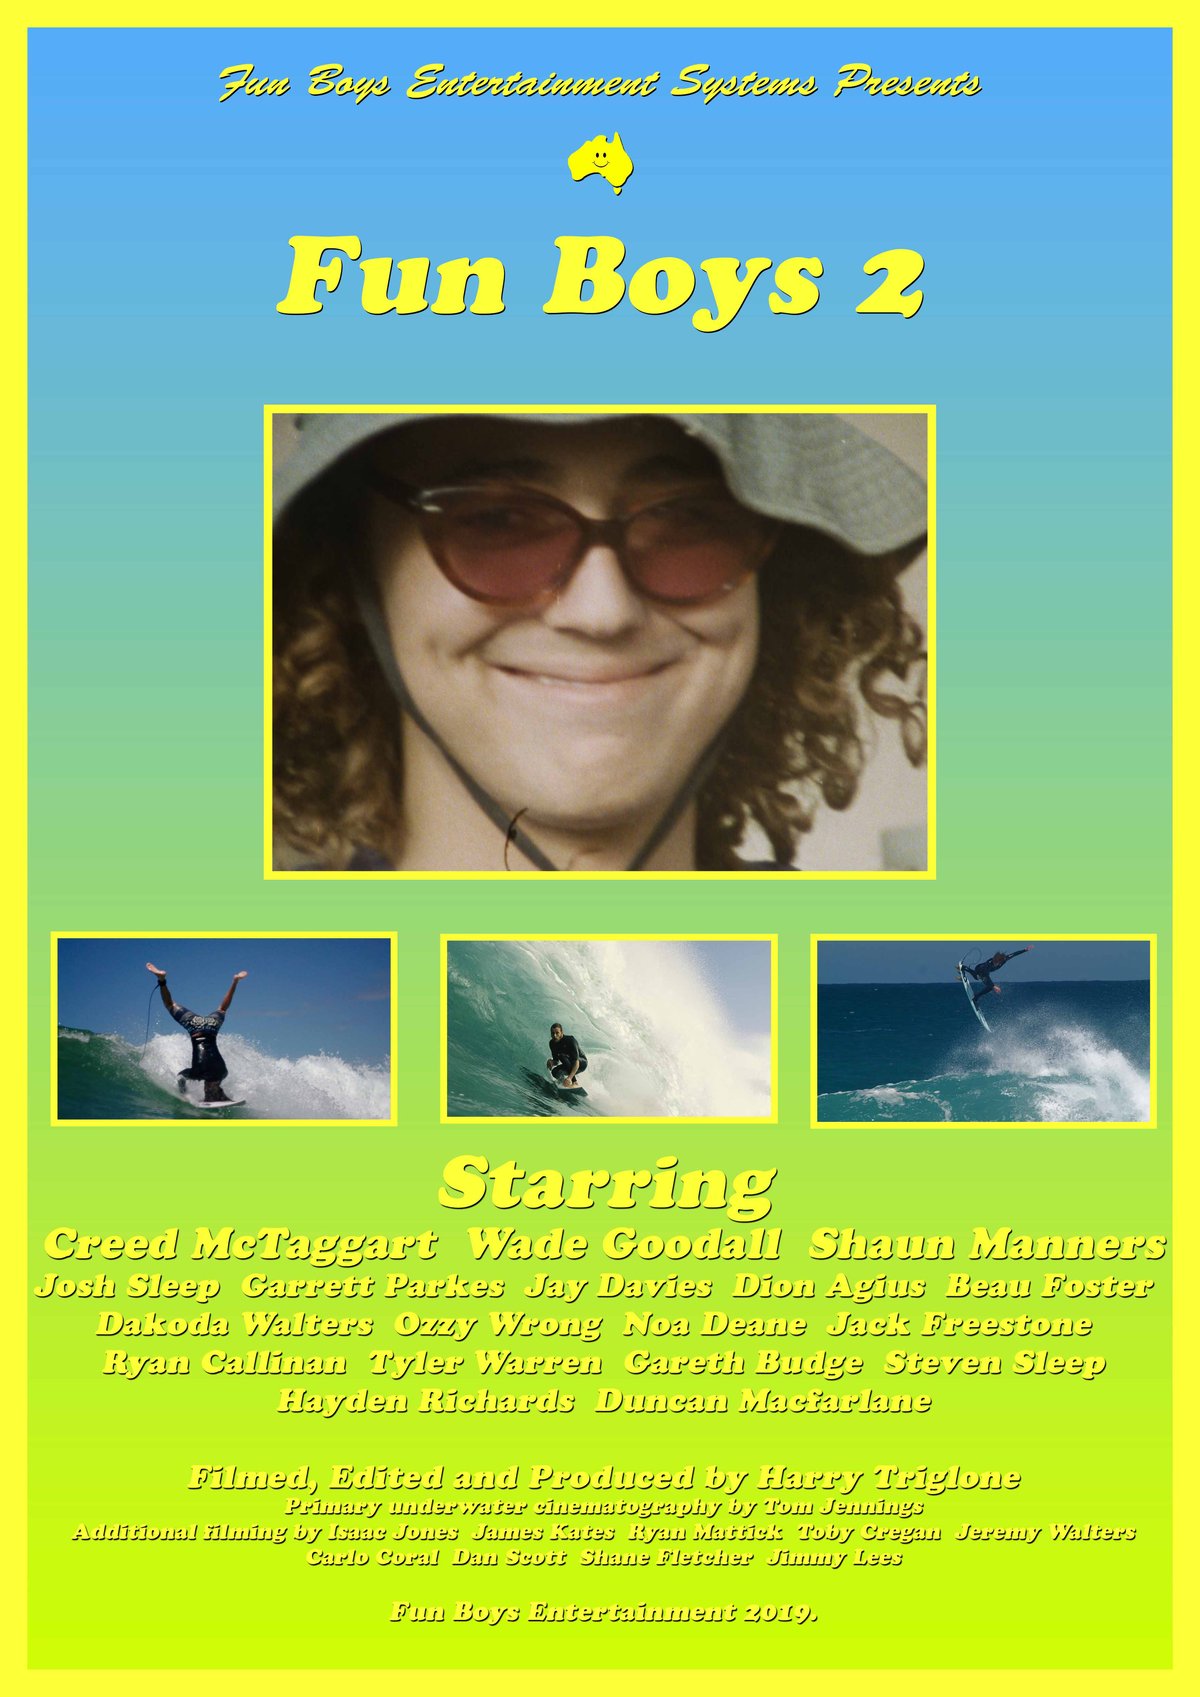 Image of "Fun Boys 2" Film Digital Download